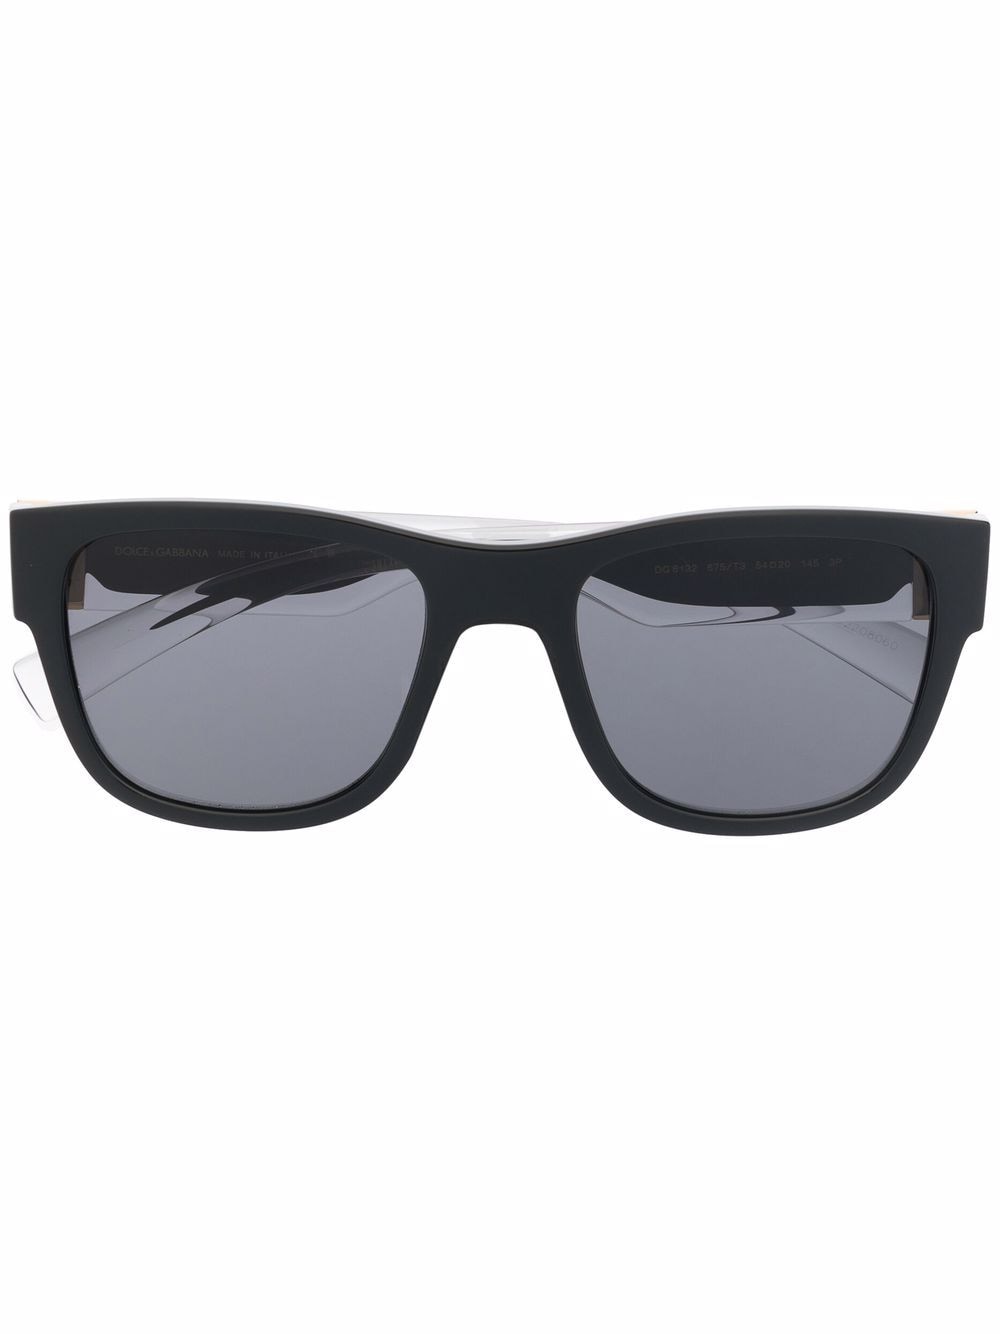 фото Dolce & gabbana eyewear солнцезащитные очки с логотипом